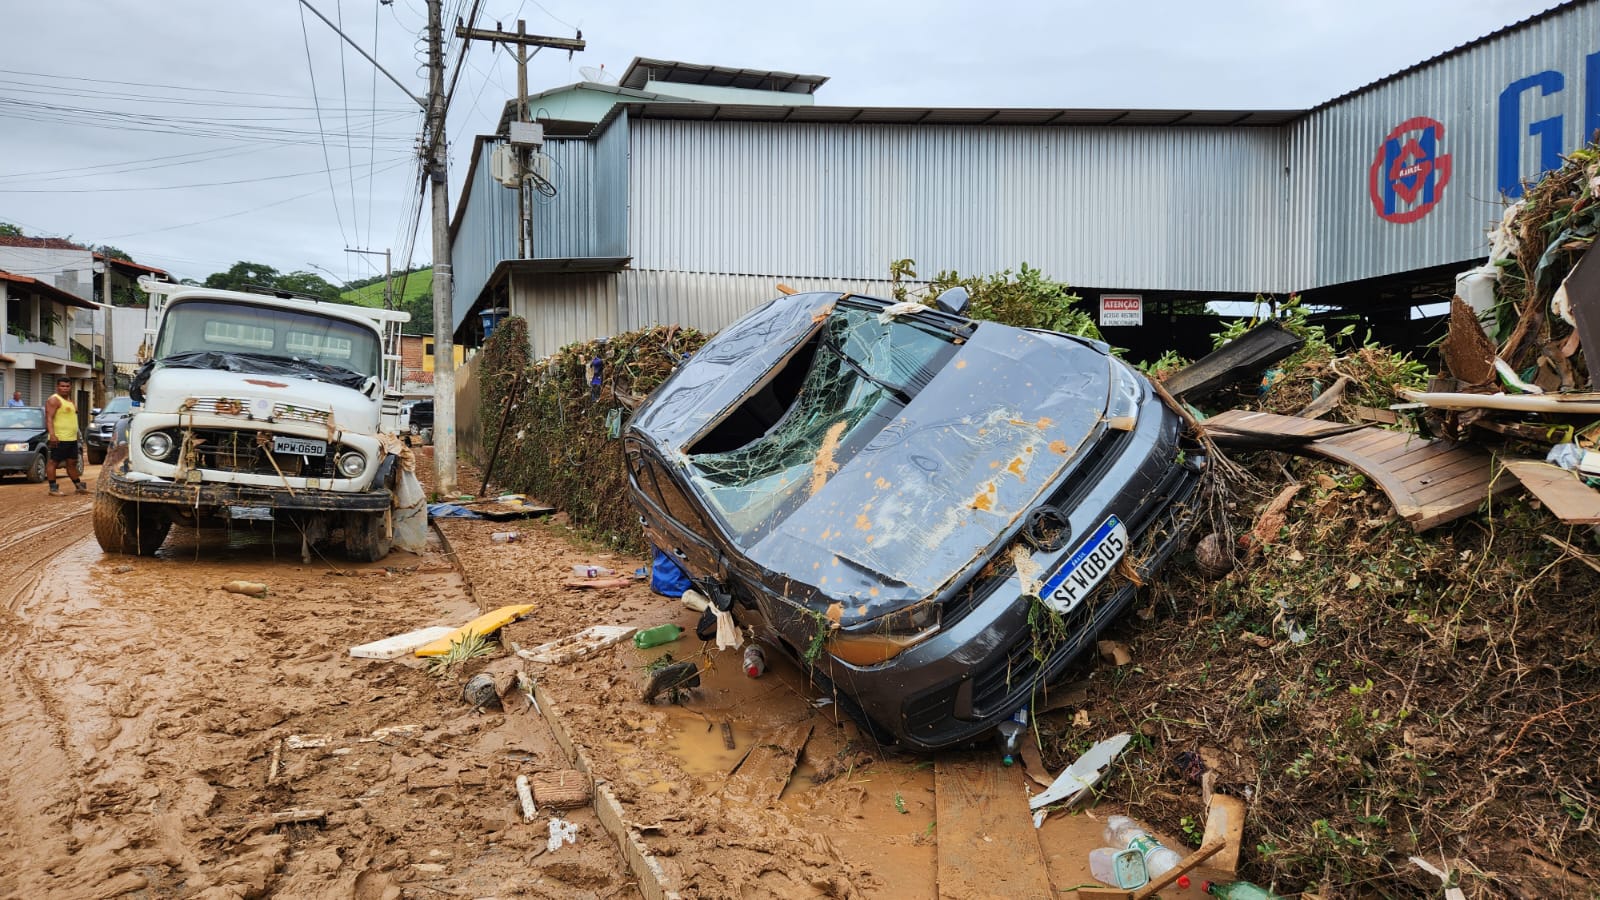 Defesa Civil confirmou mais mortes em Mimoso do Sul, totalizando 15 na cidade, e duas já contabilizadas em Apiacá